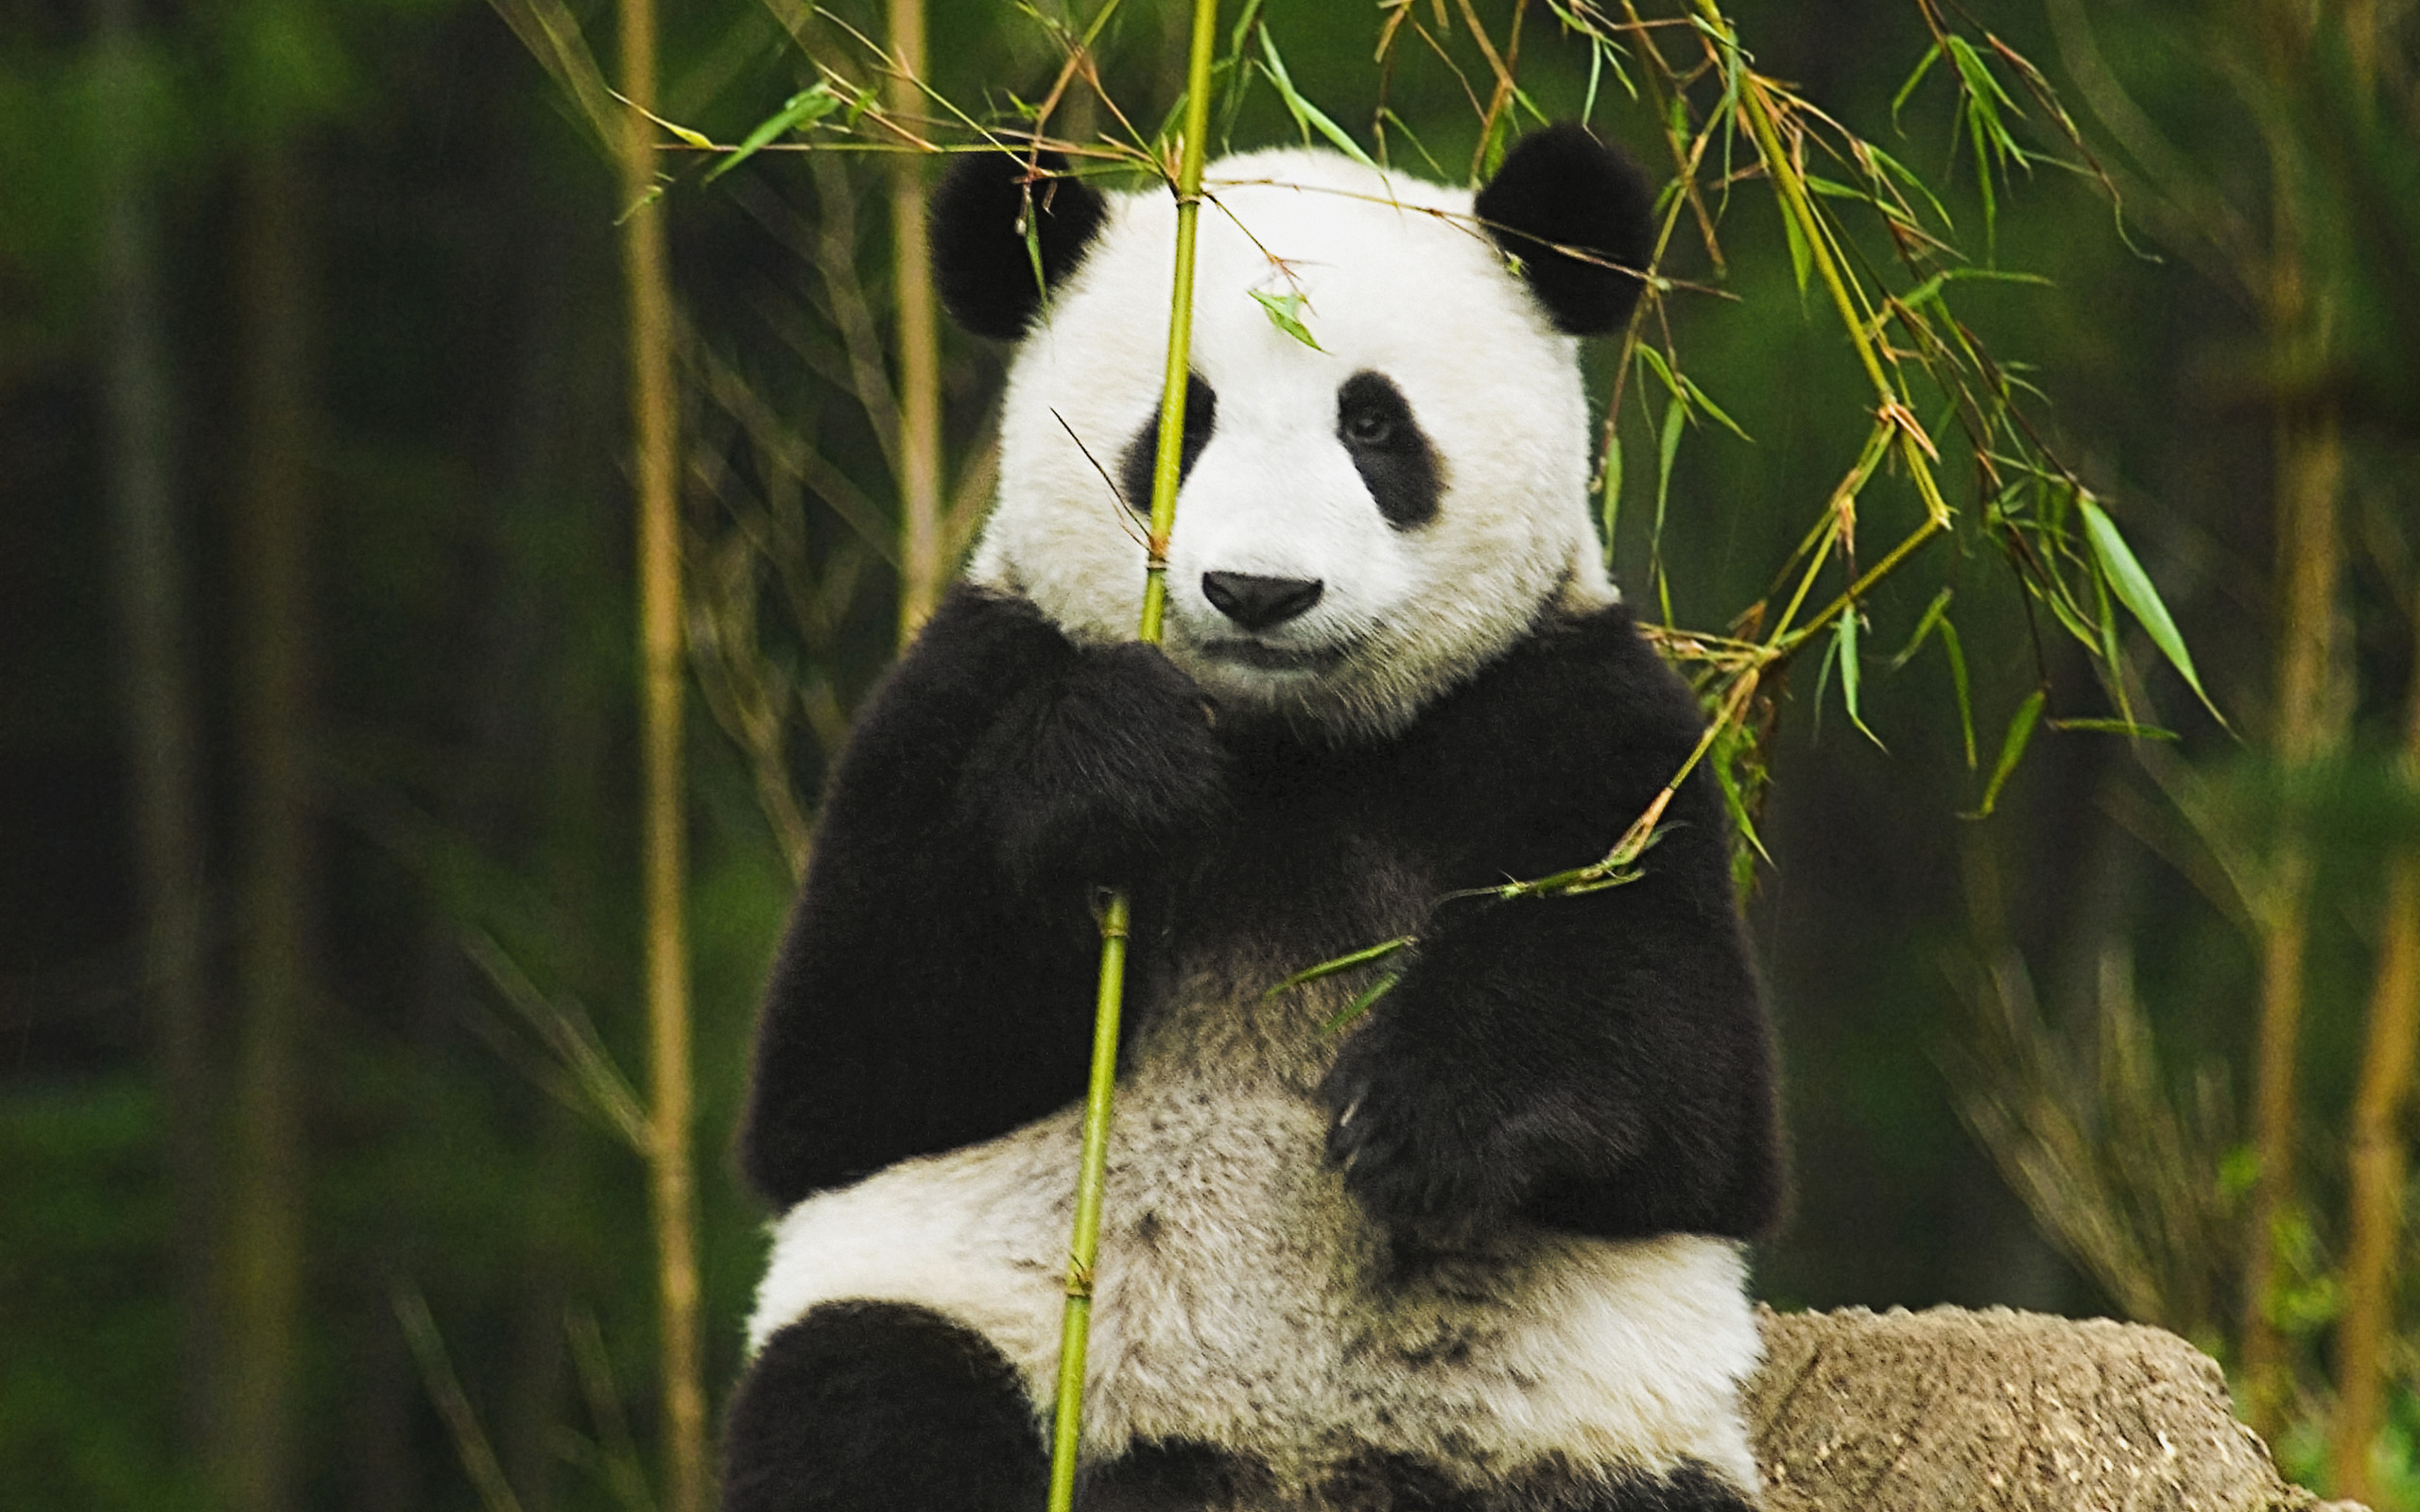 Panda HD Wallpaper | Background Image | 2560x1600 | ID ...